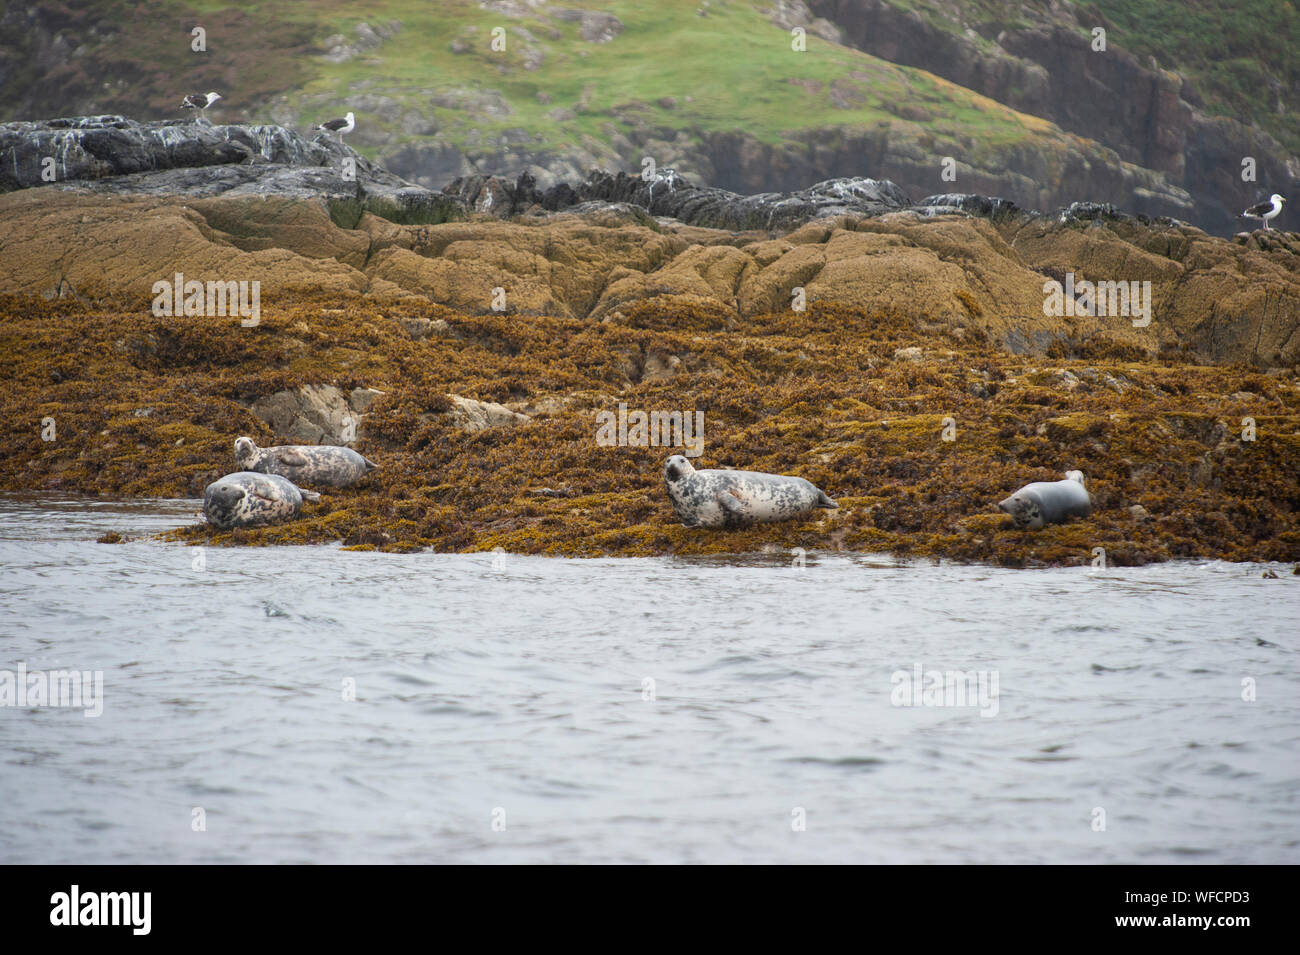 Grau Dichtung oder Atlantic Seal, Halichoerus grypus, erwachsene Kolonie auf Felsen, Summer Isles, Schottland, Britische Inseln Stockfoto